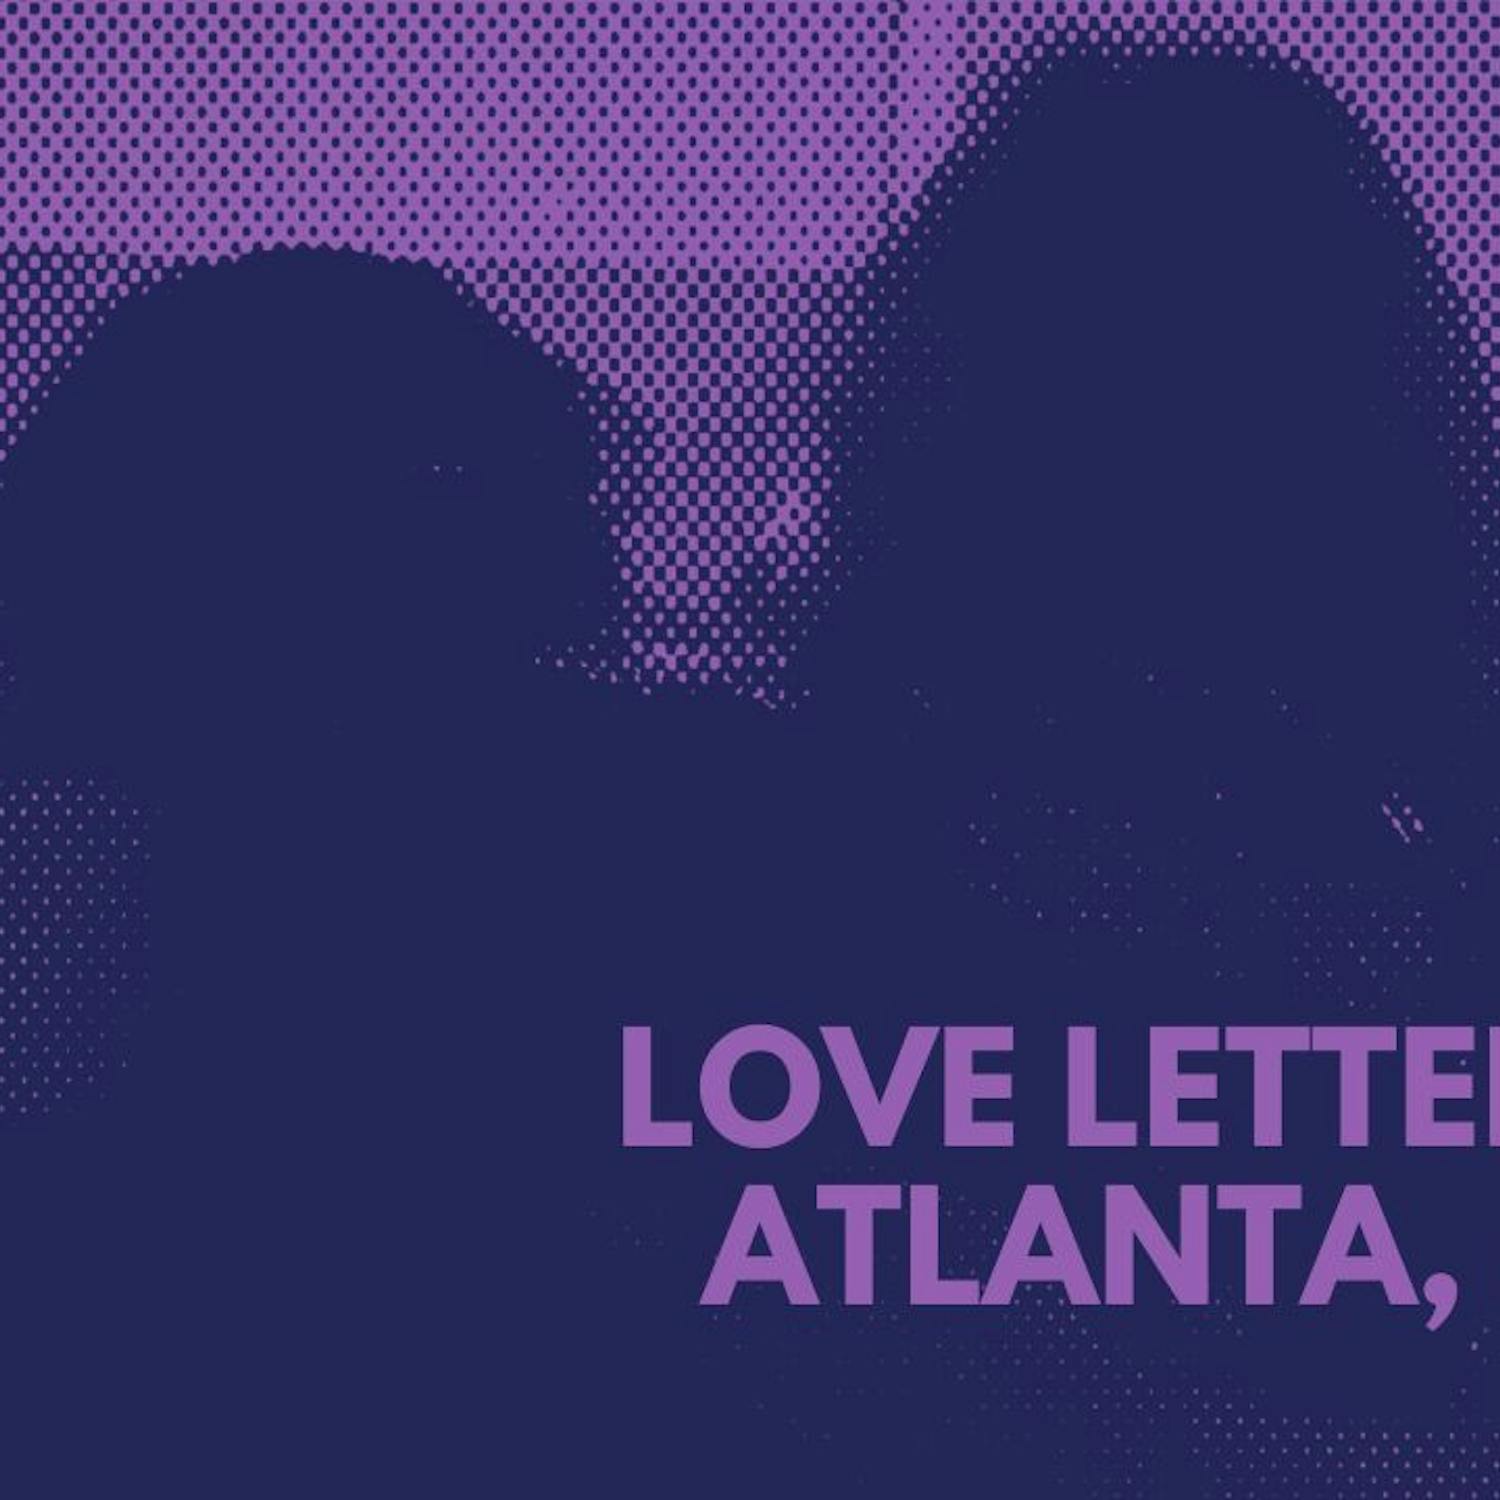 love-letters-to-atlanta-v2.jpg